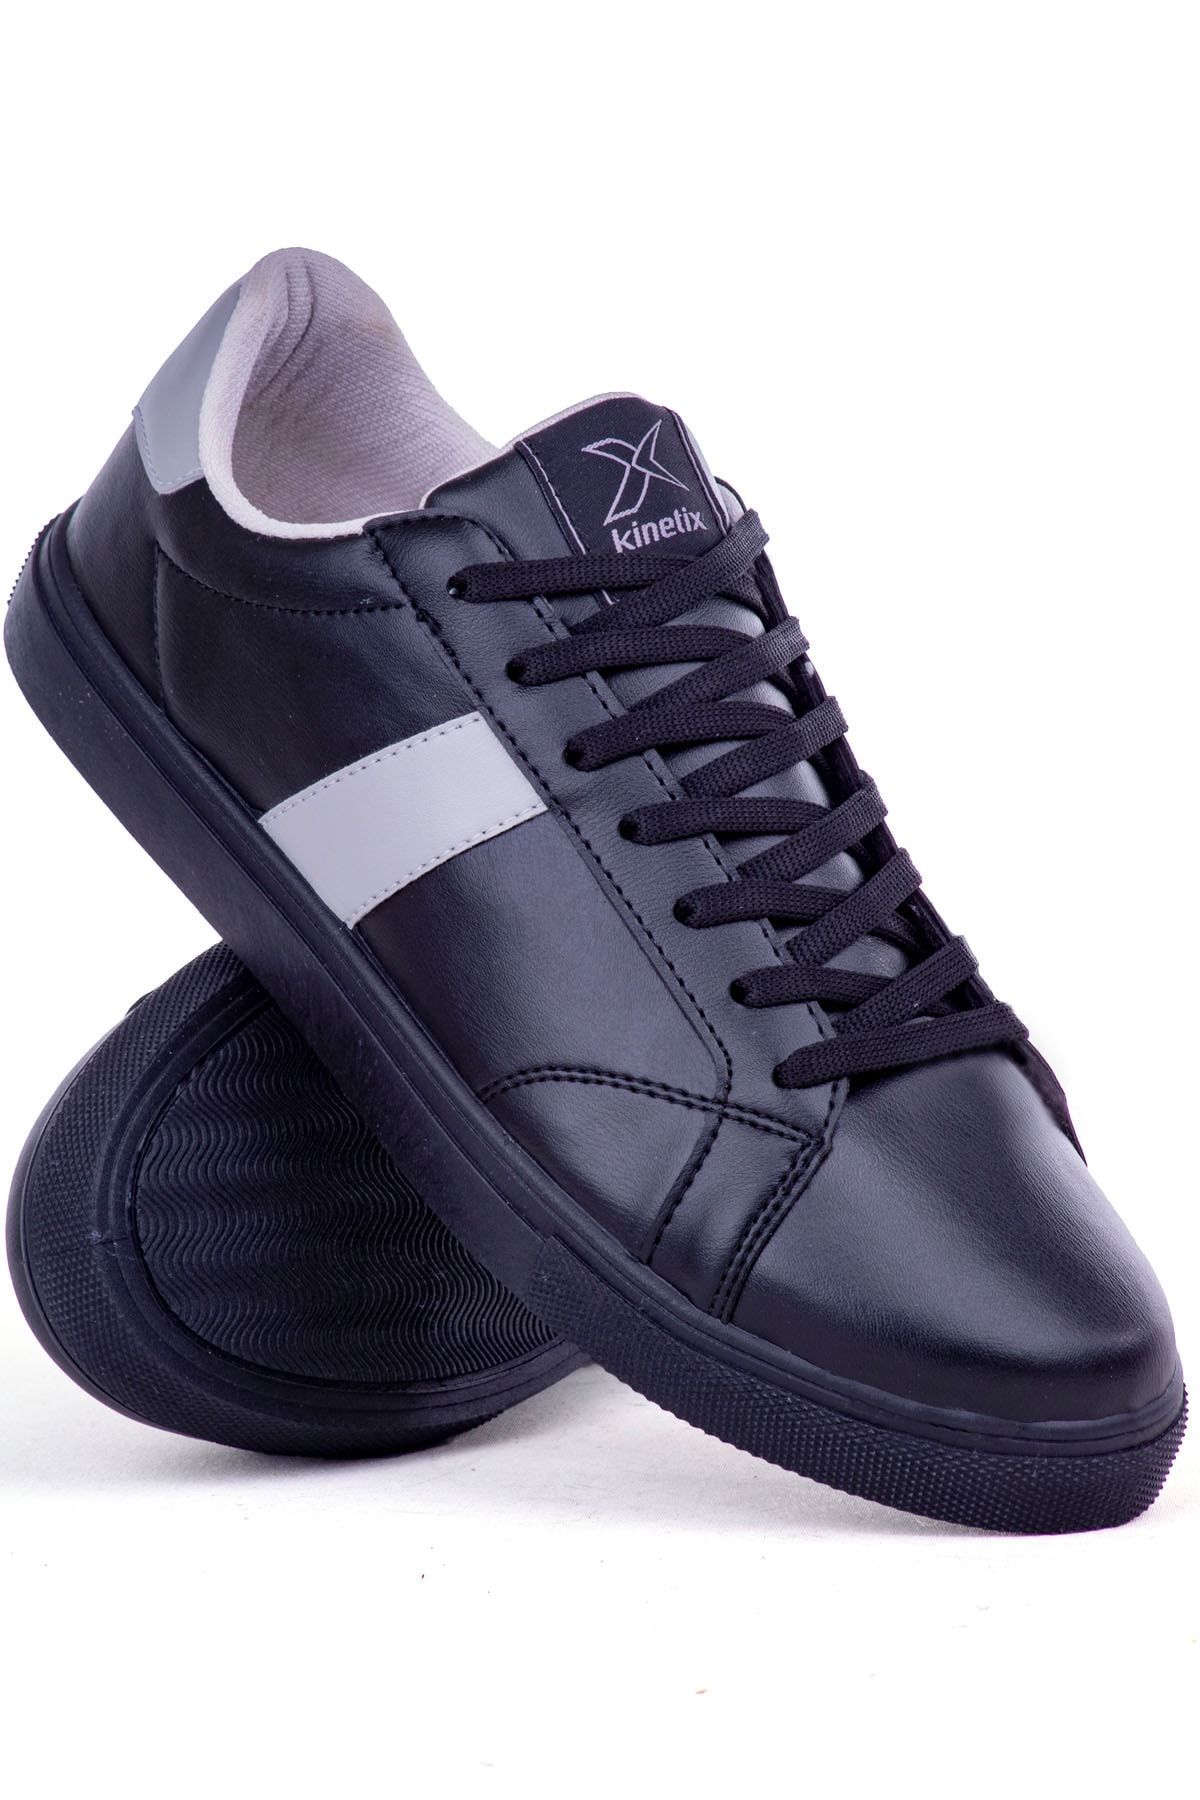 Kinetix Impala Günlük Sneaker Düz Yürüyüş Erkek Spor Ayakkabı